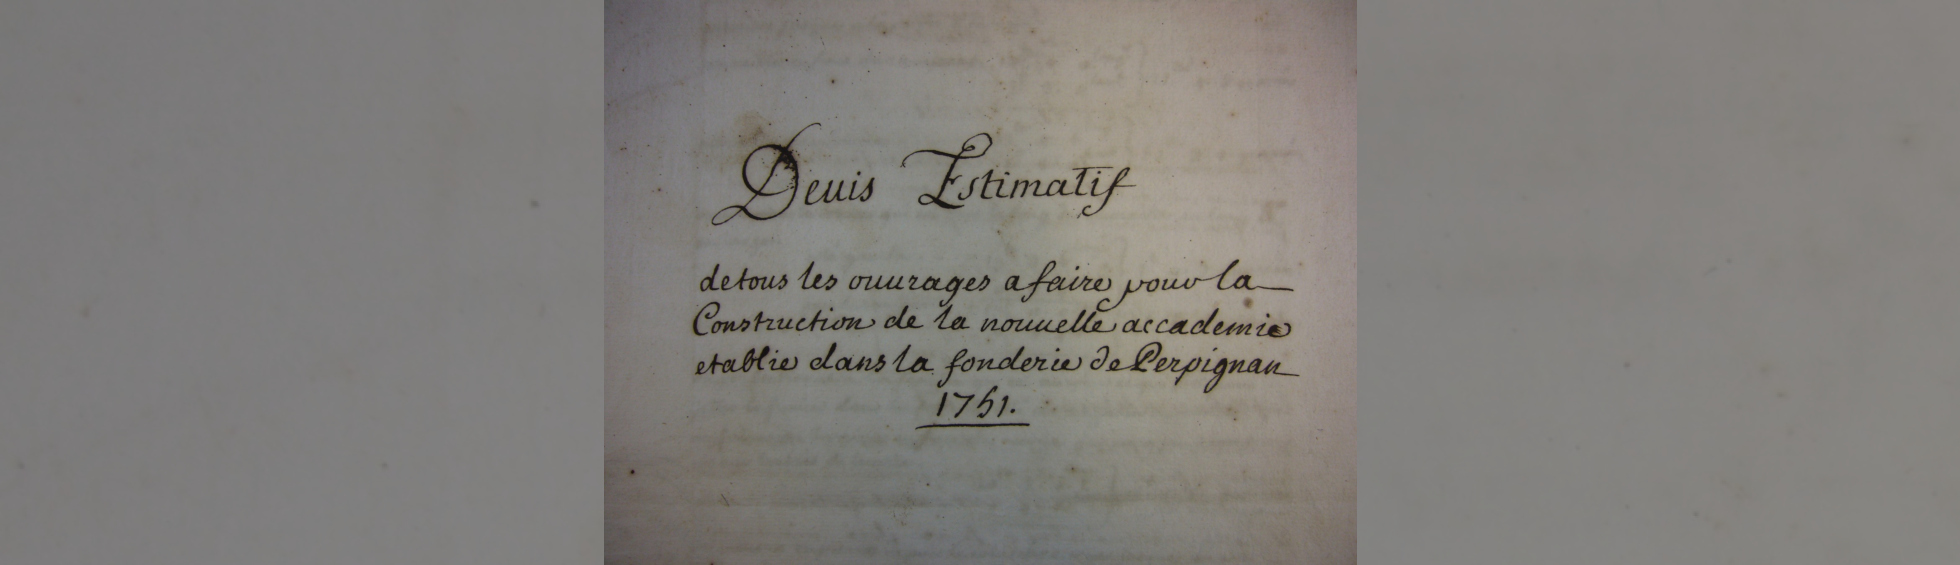 Titre du devis:Estimatif pour la transformation de la fonderie de canon en académie militaire (1751)